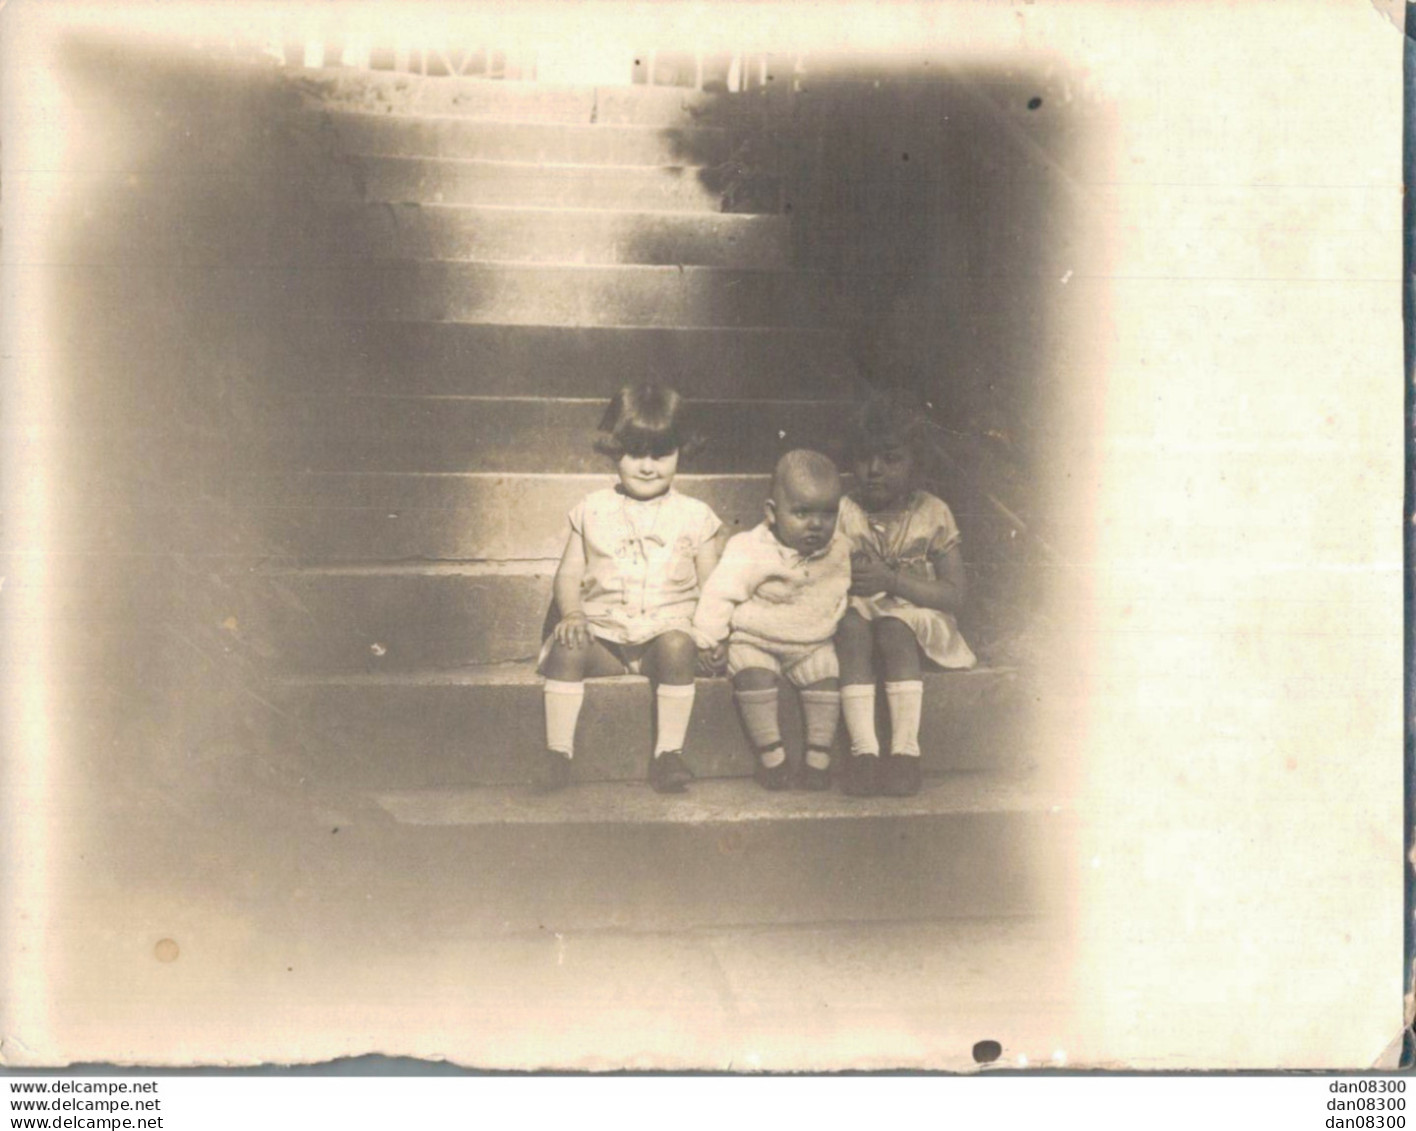 PHOTO DE 12 X 9 CMS TROIS ENFANTS ASSIS SUR LES ESCALIERS SOUVENIR DE MME GERMAINE BONNEROT EN 1929 - Anonyme Personen